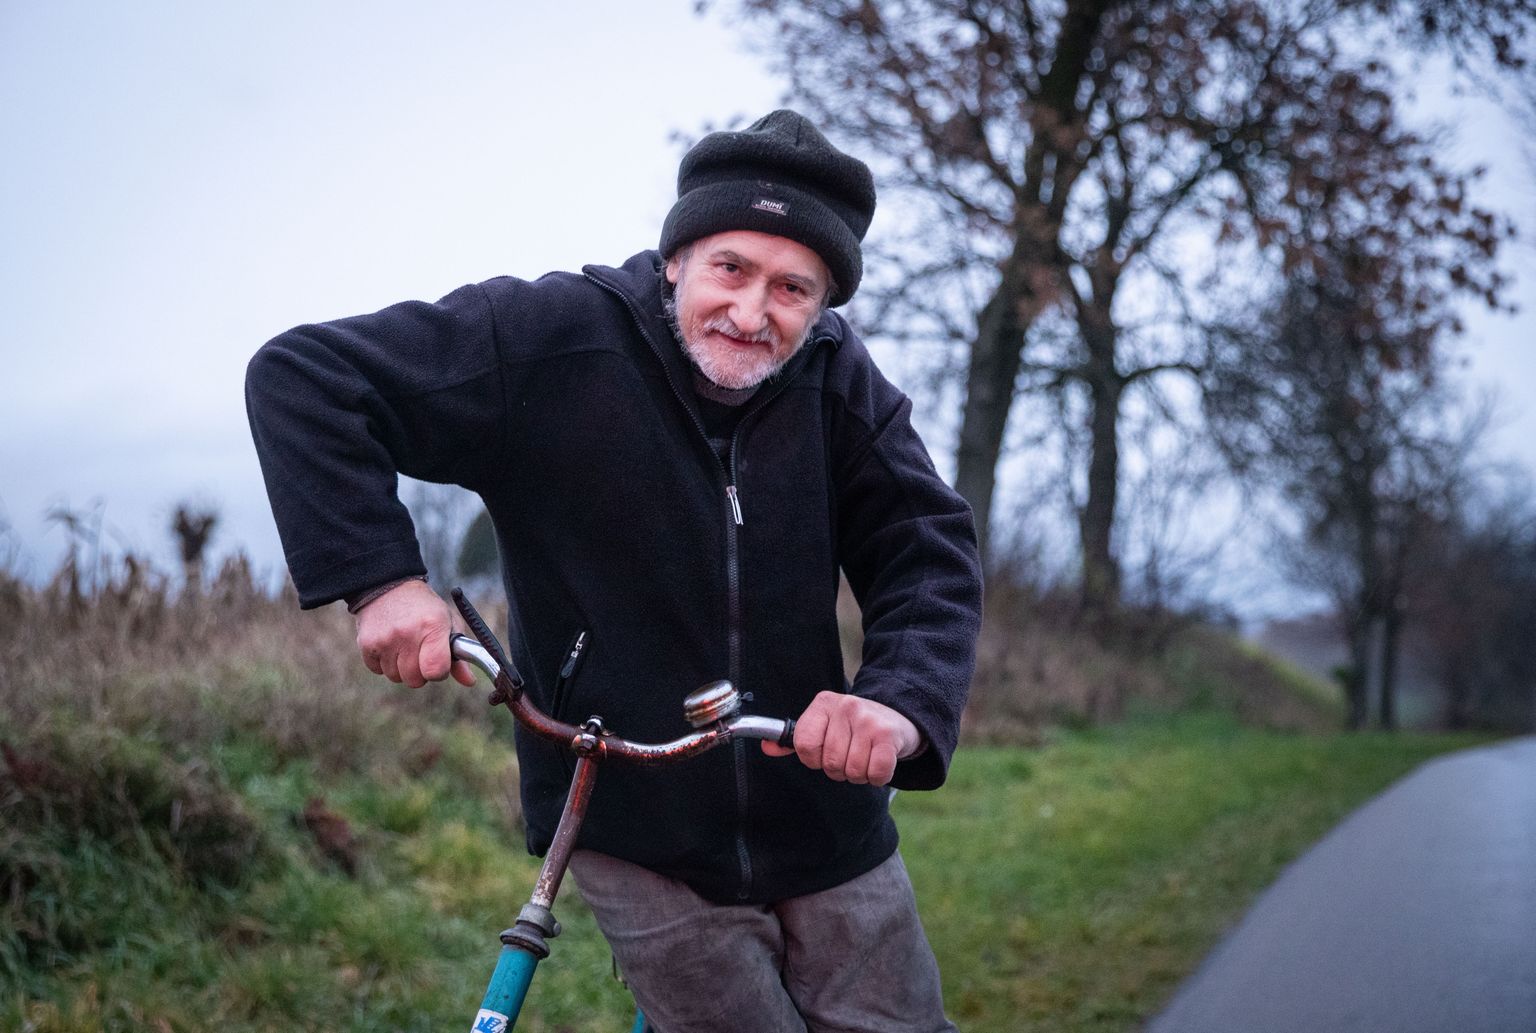 Сегодня фермер Станислав вел свой велосипед домой из соседнего села, в которое попала ракета, и благодарил судьбу за то, что остался жив.